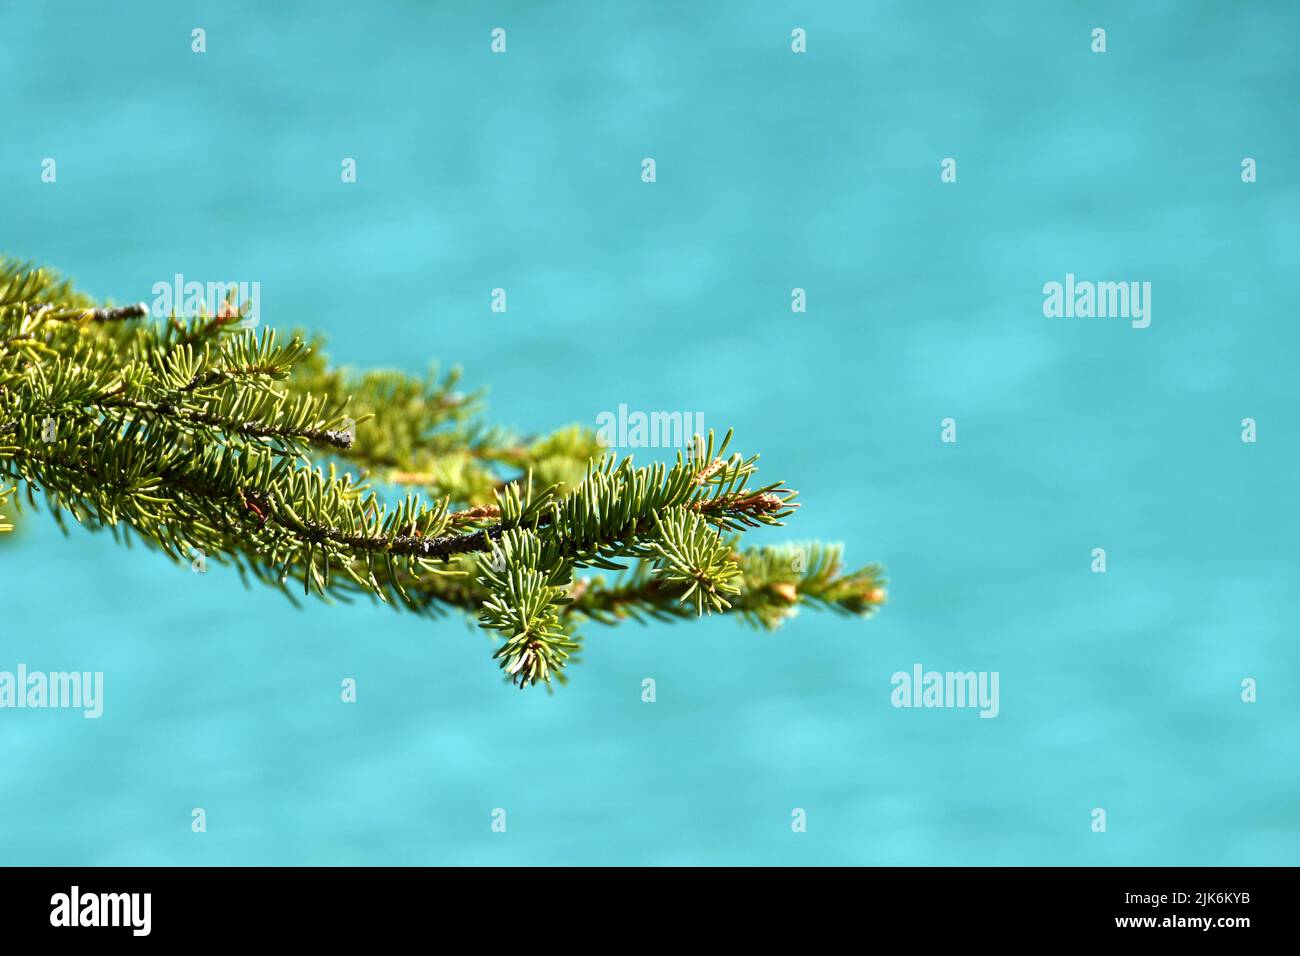 Vista de cerca de las agujas en la rama de un árbol de pino, con fondo desenfocado liso de agua azul turquesa. No hay personas, espacio de copia. Foto de stock